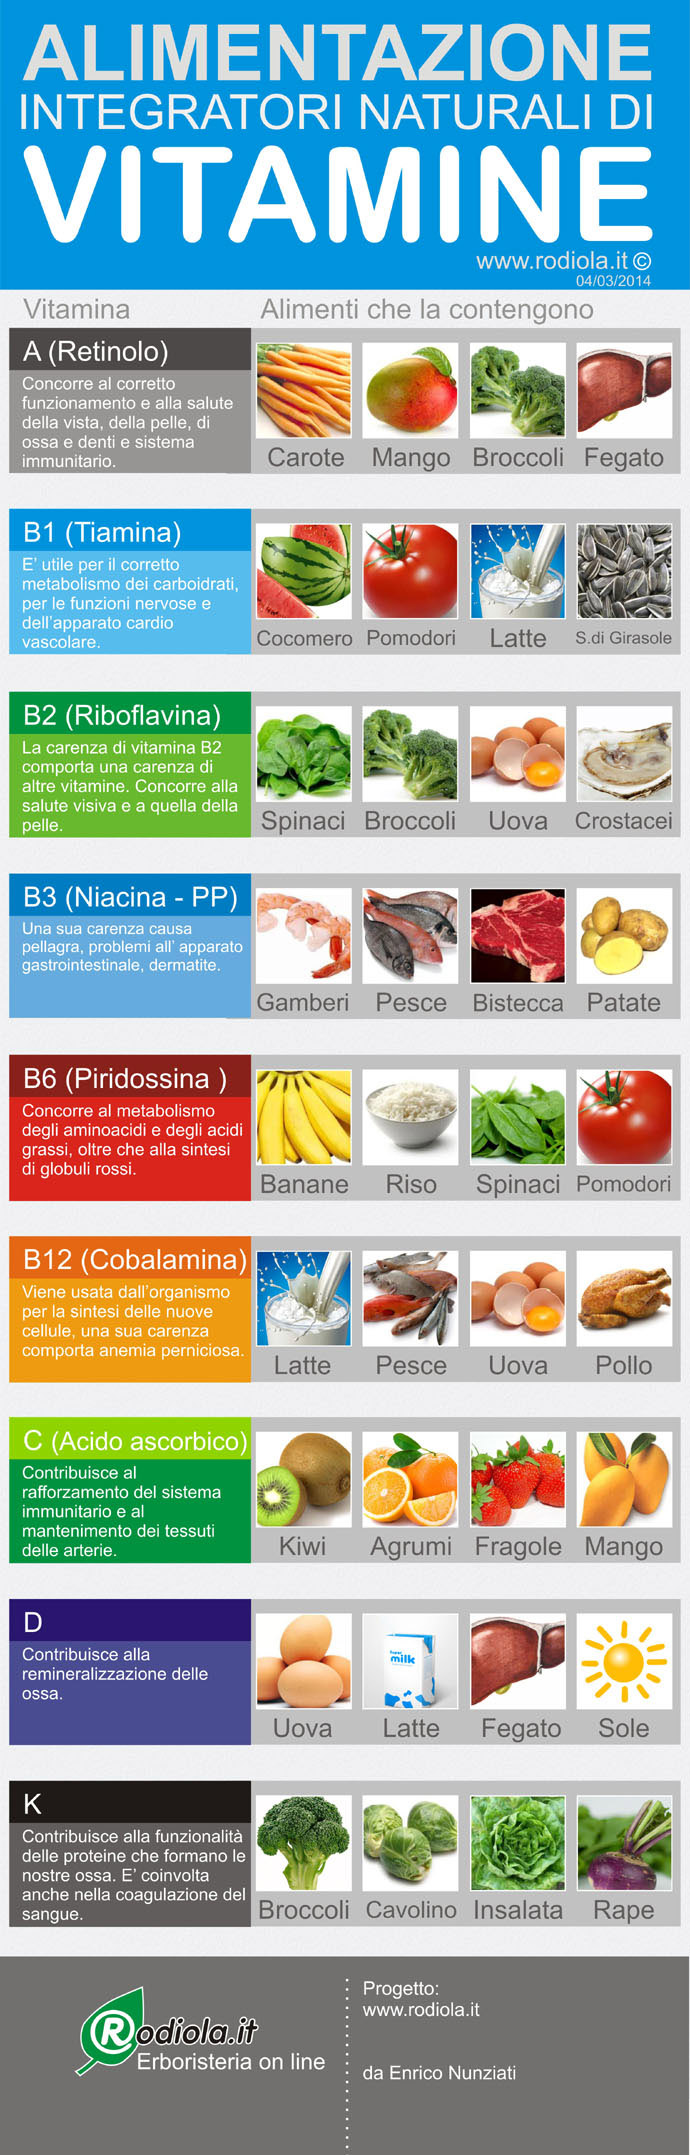 vitamine degli alimenti